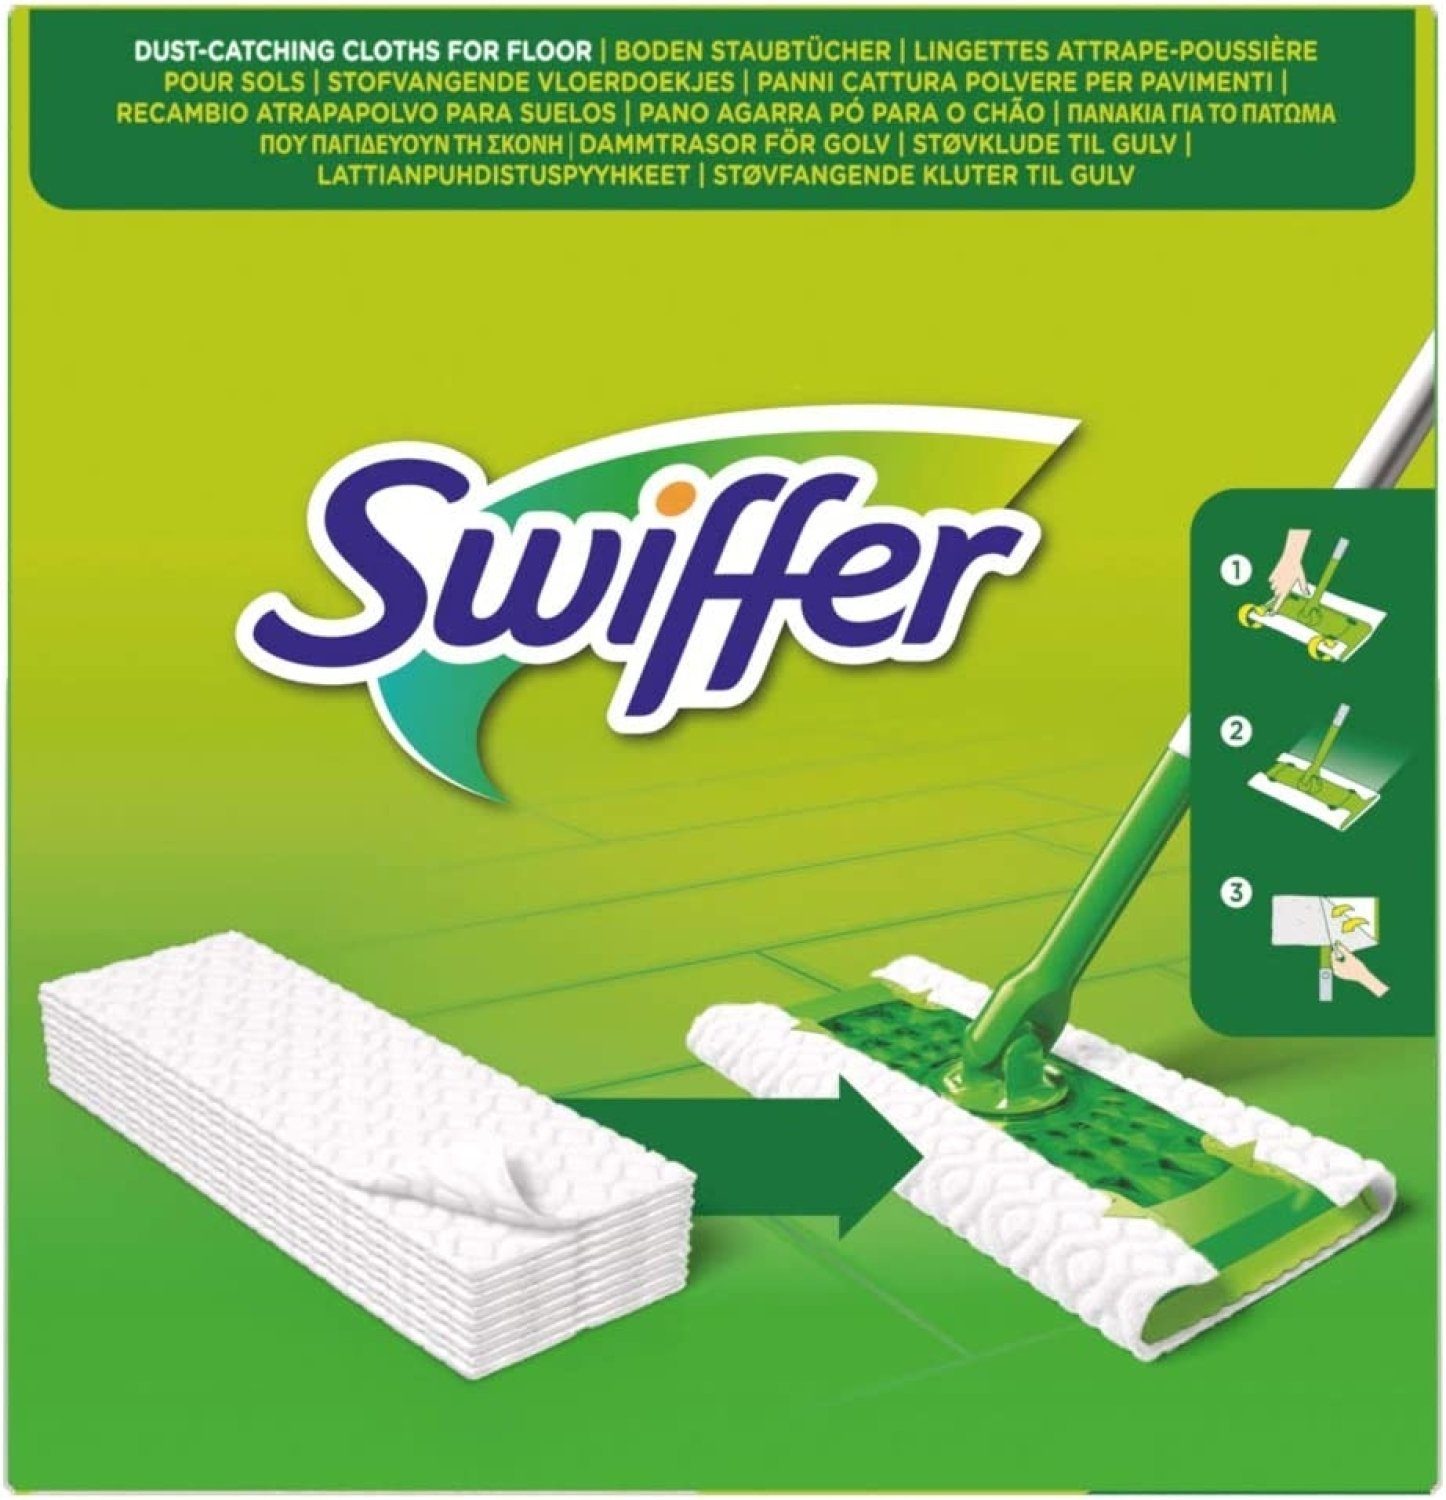 Swiffer Staubbesen Swiffer DRY Bodenwischer Boden separat Tücher NACHFÜLLPACK erhältlich) 36 Staubtücher (Bodenwischer 